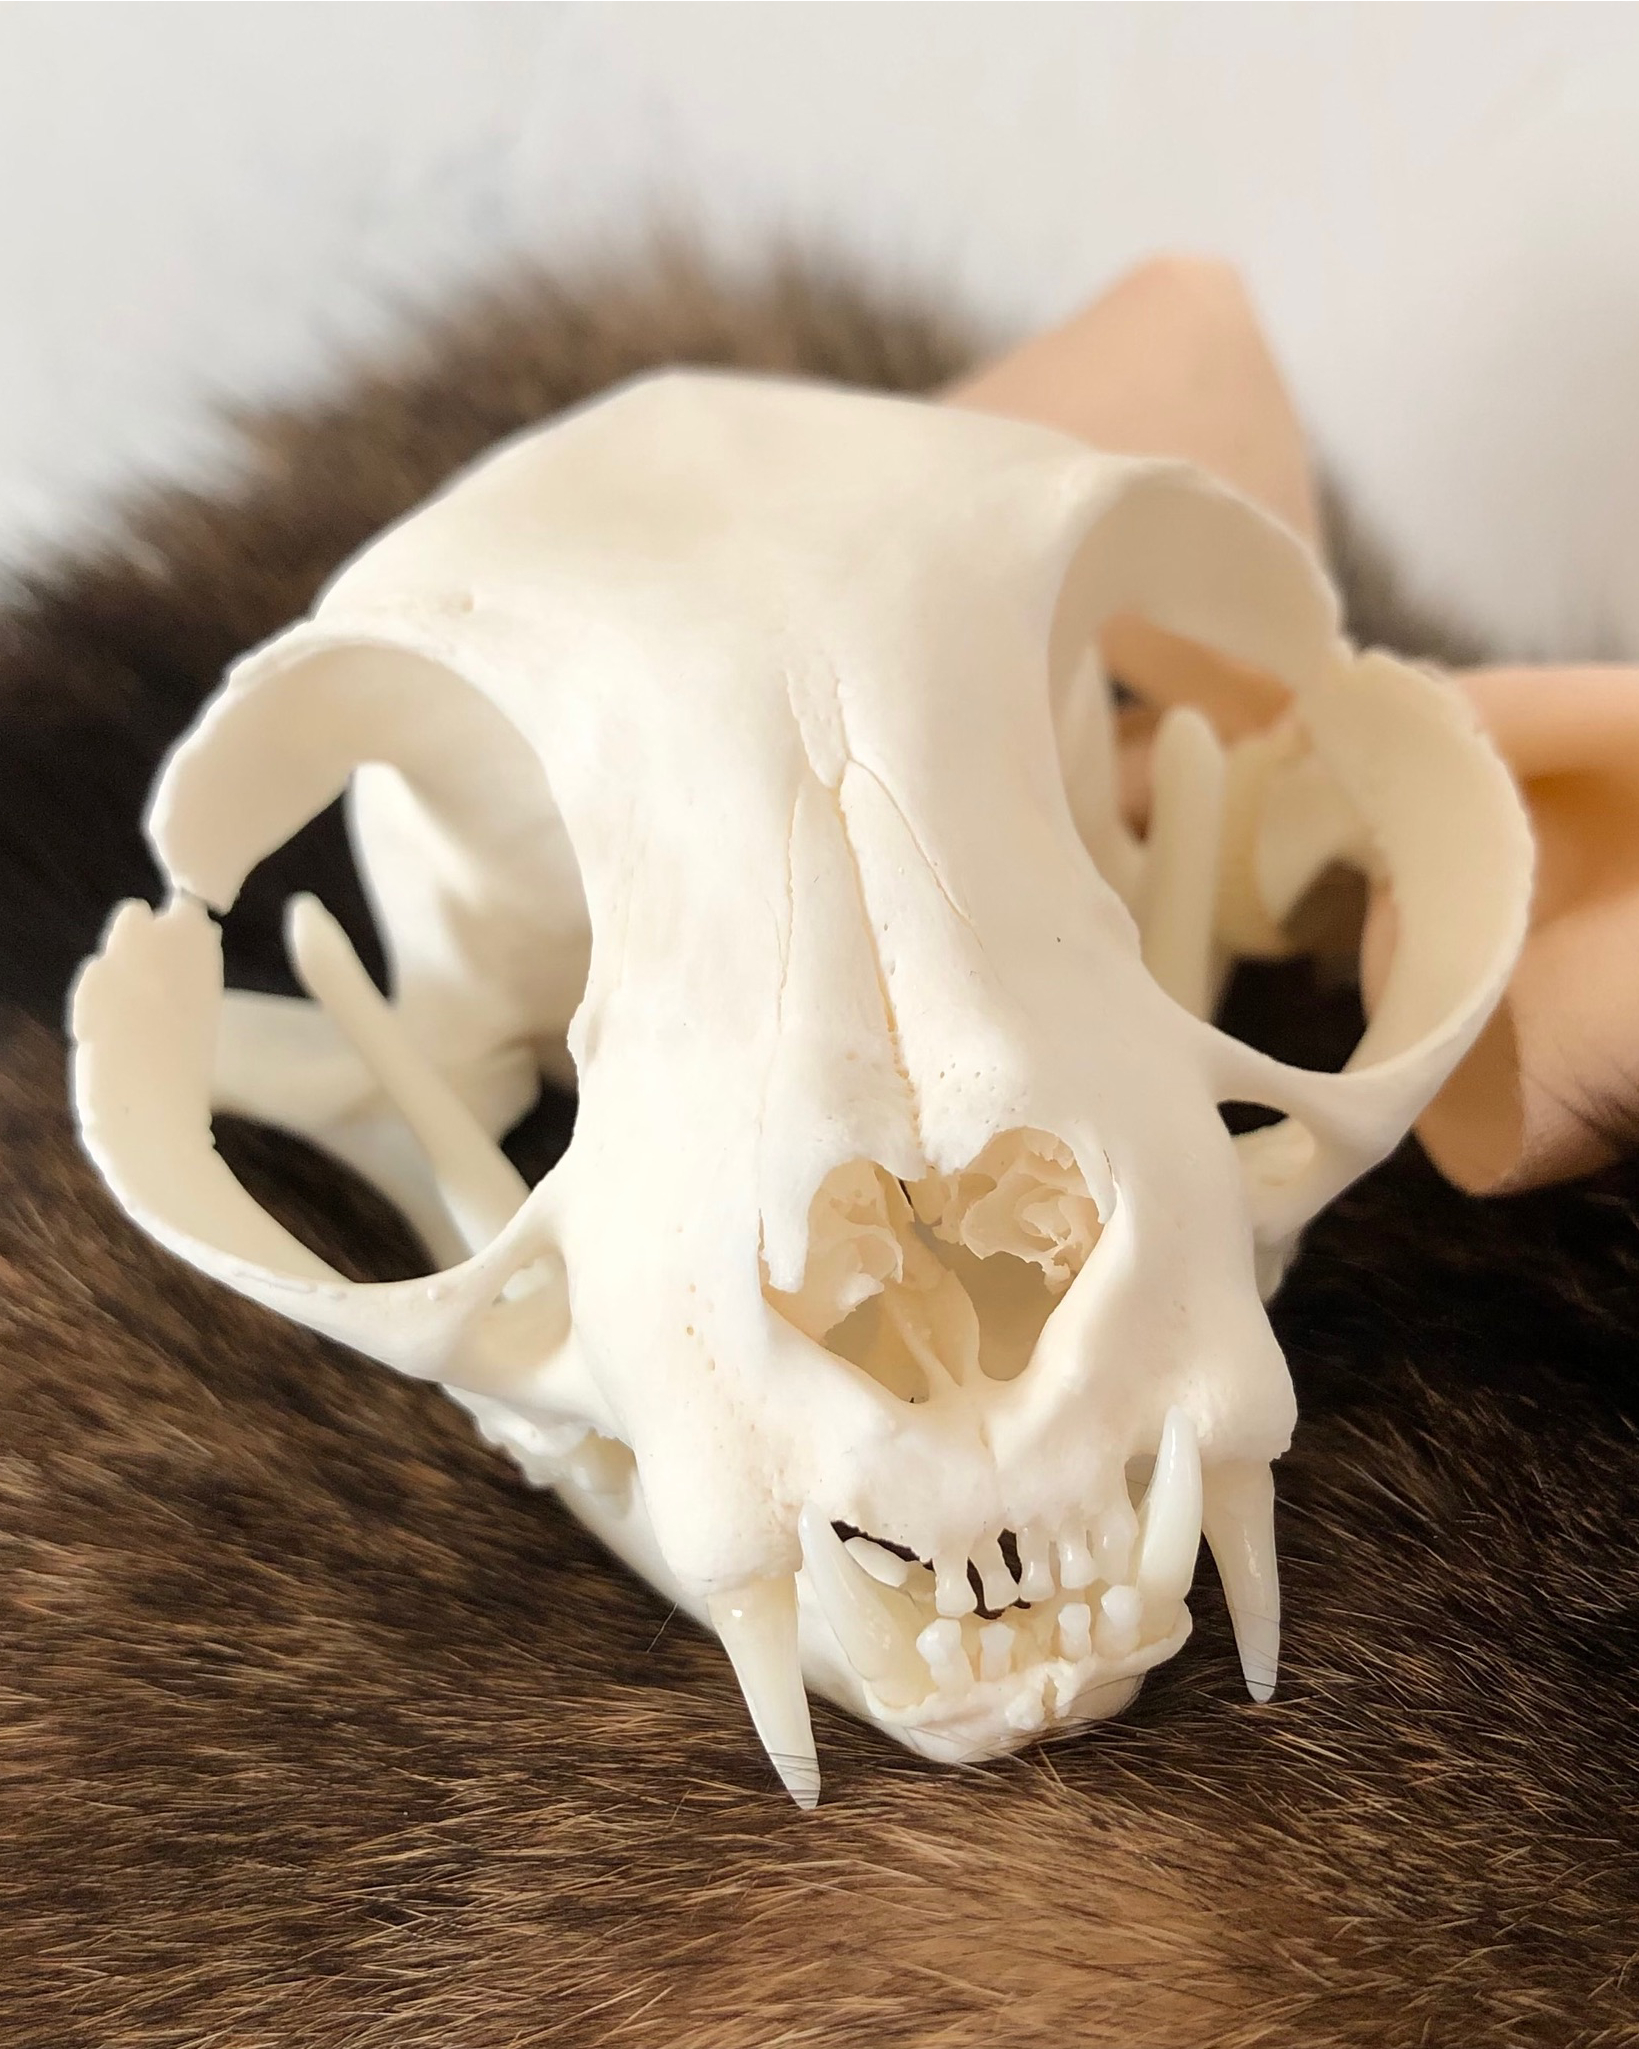 Close-up of cat's skull